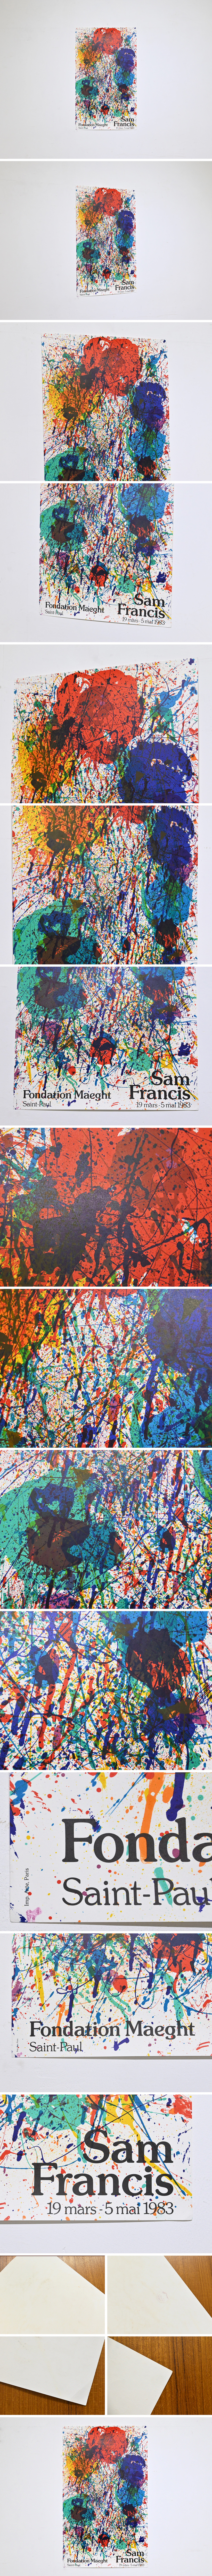 日本直販サム・フランシス リトグラフポスター 1983年 オリジナル 南仏 マーグ財団美術館/現代美術 抽象表現主義 マークロスコ ジャクソンポロック 石版画、リトグラフ